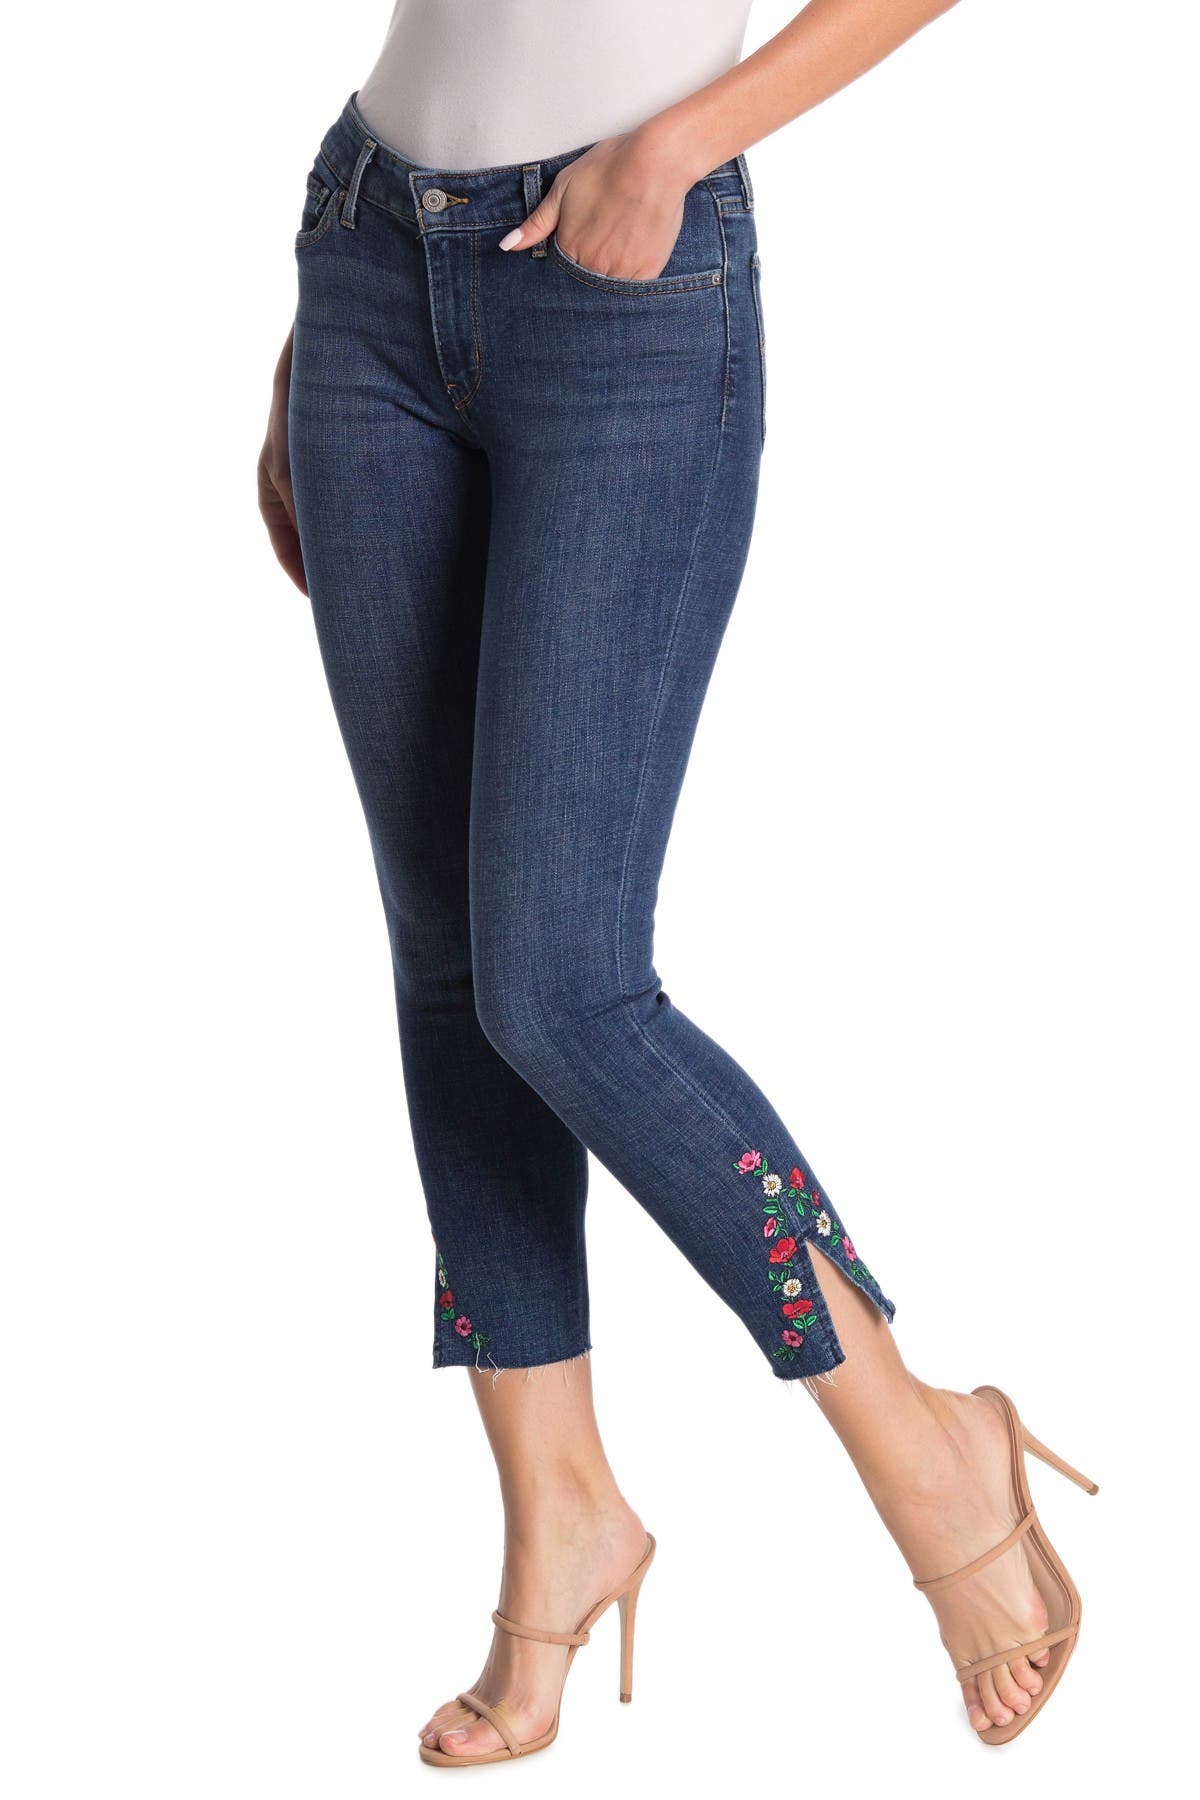 levi's floral jeans